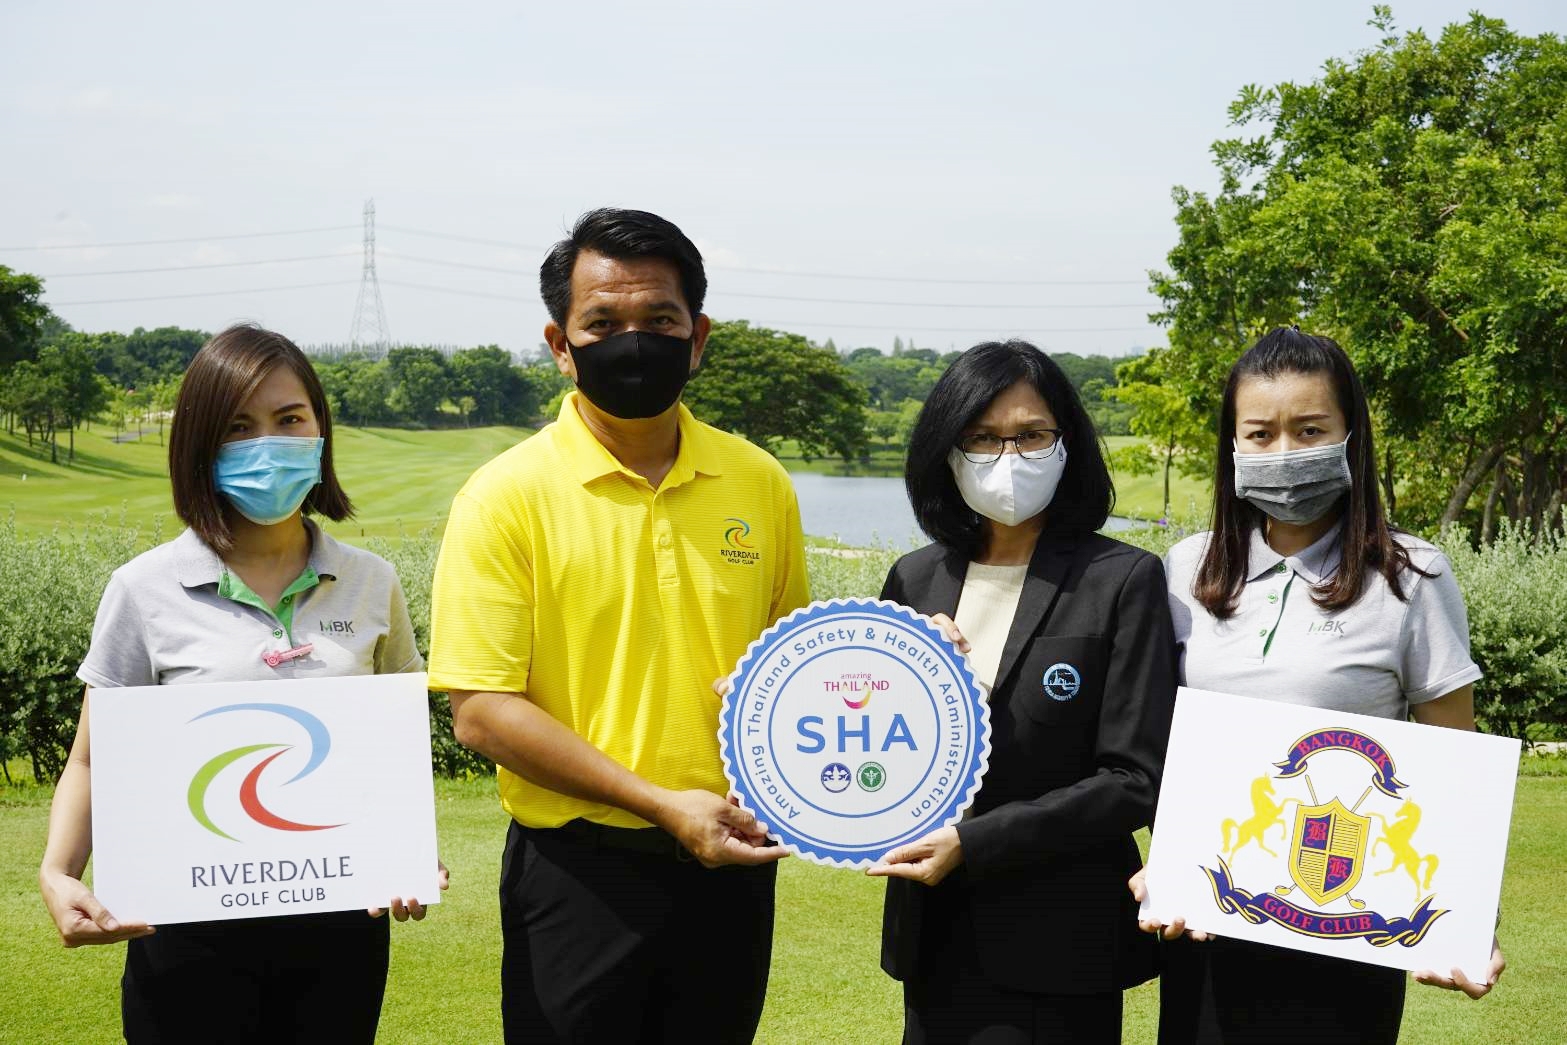 ภาพข่าว: สนามกอล์ฟริเวอร์เดล กอล์ฟ คลับ และ สนามกอล์ฟบางกอก กอล์ฟ คลับ ได้รับรองมาตรฐานด้านสุขอนามัย Amazing Thailand Safety Health